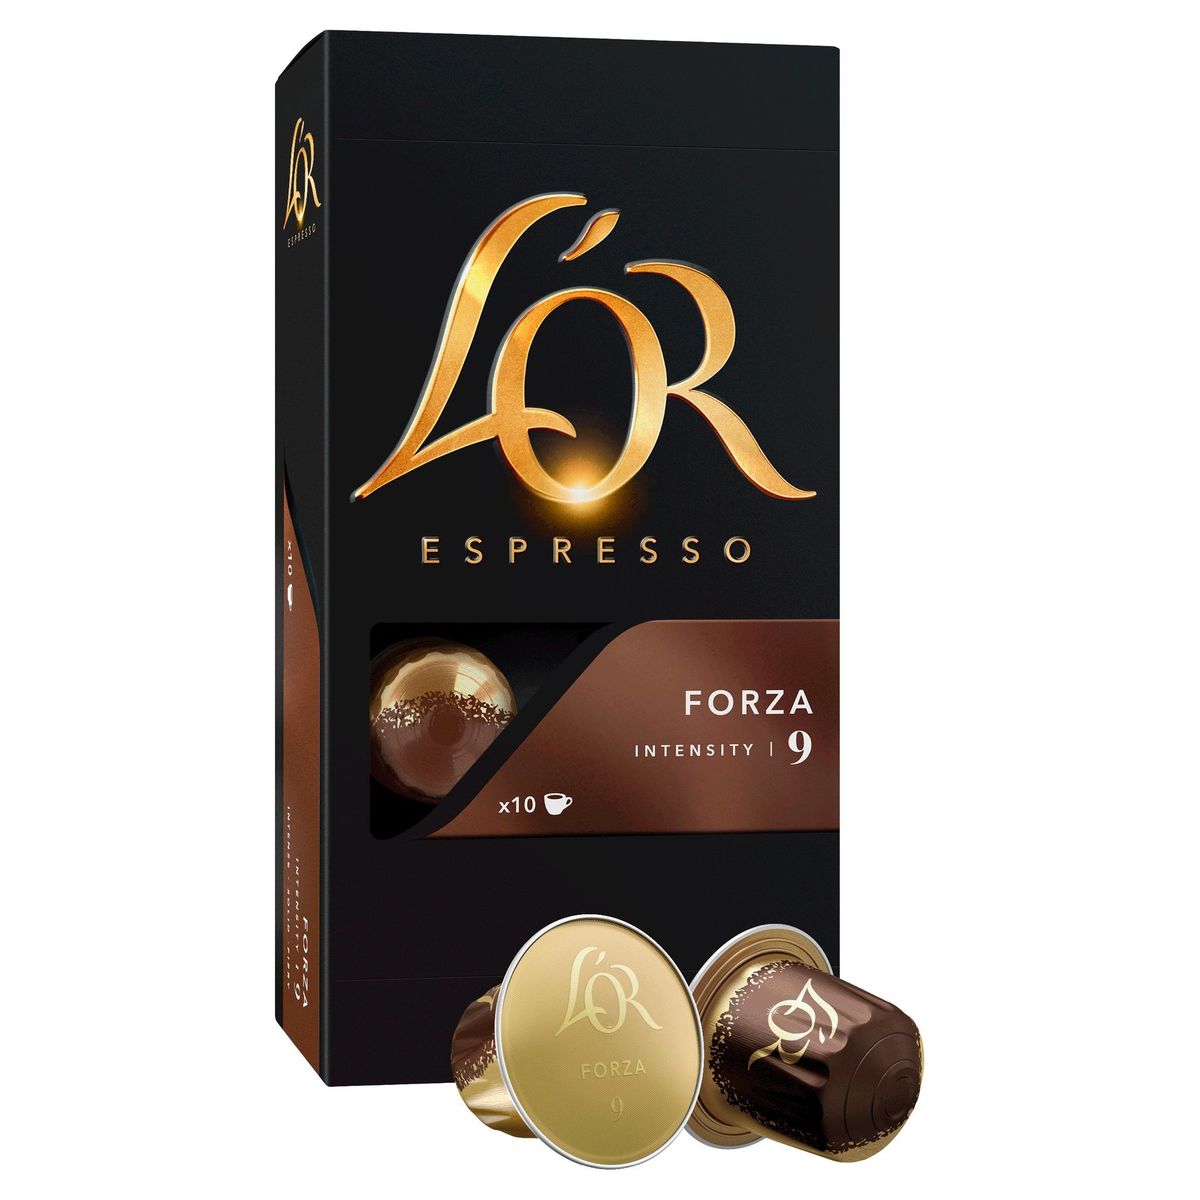 L'OR Koffie Capsules Espresso Forza Intensiteit 9 10 stuks